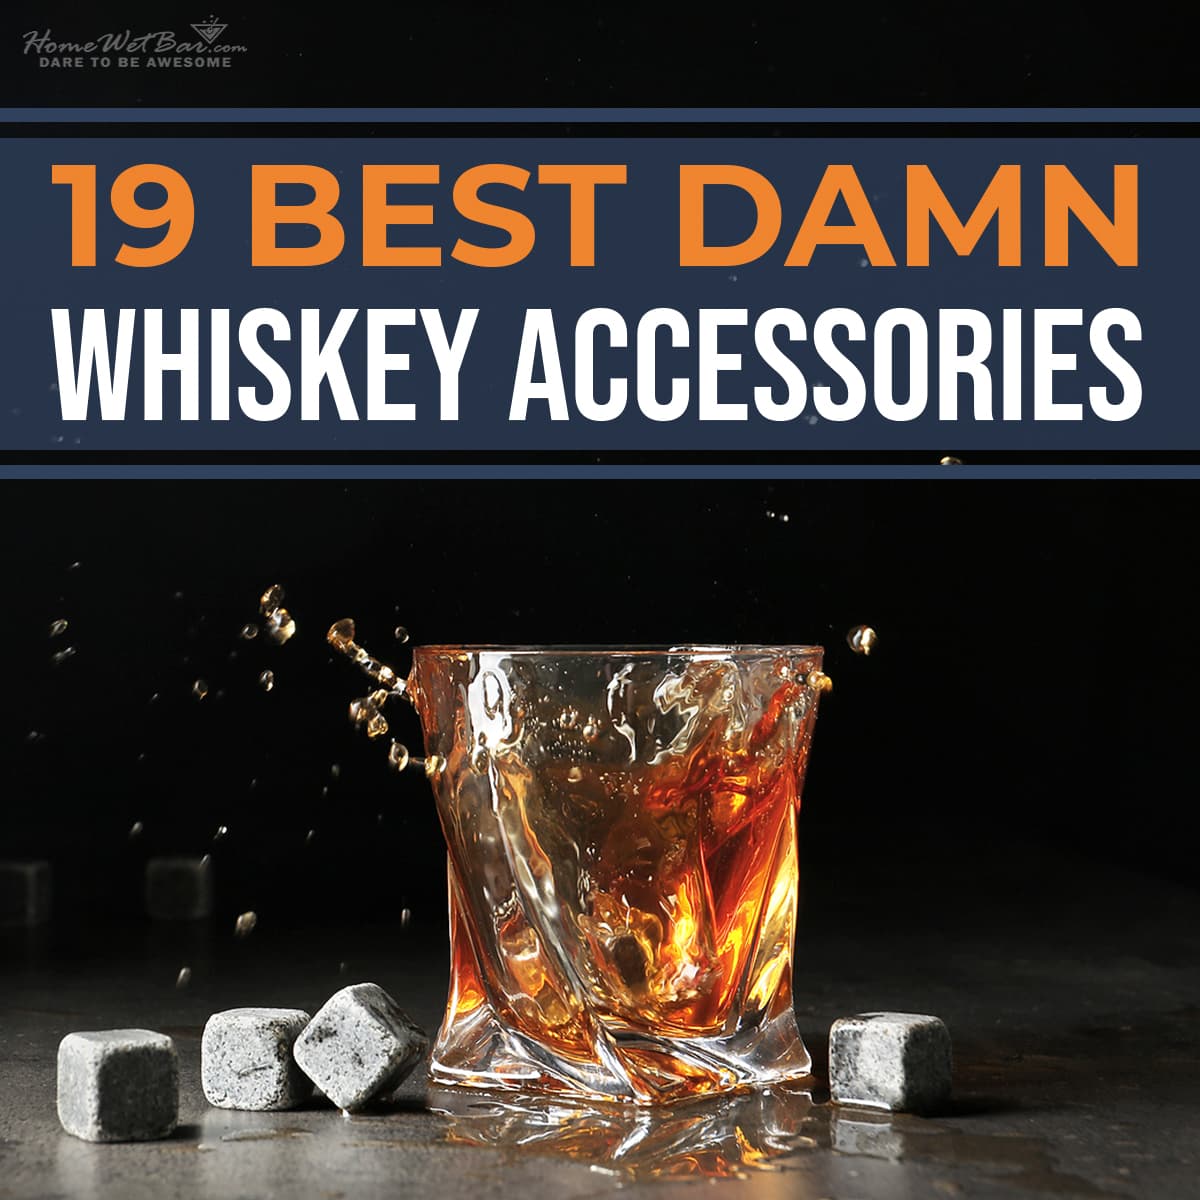 19 Best Damn Whiskey Accessories